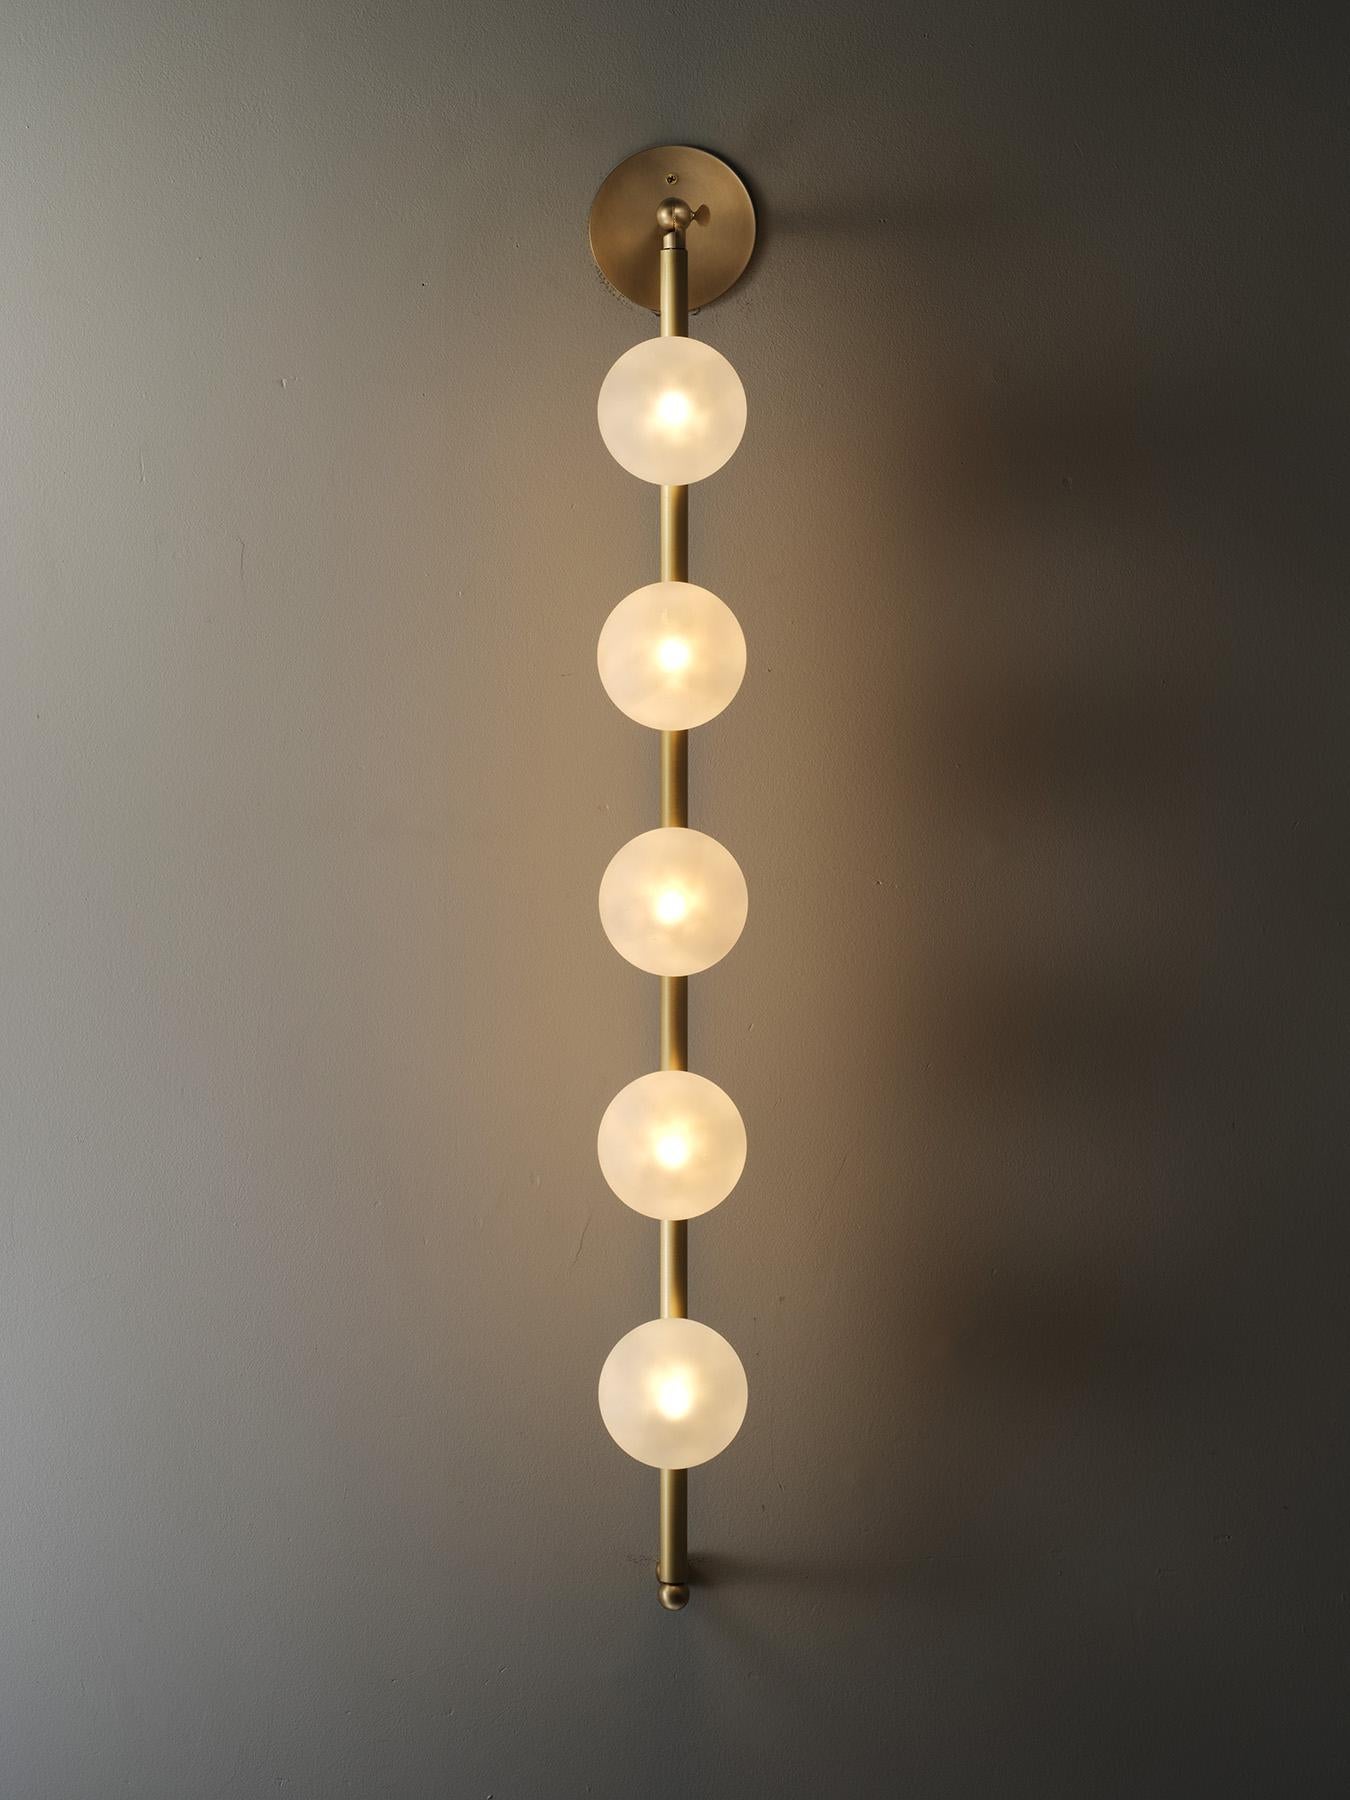 Wir stellen Bisou vor, die neue Wandleuchte von blueprint lighting. Bisou ist ein überdimensionaler Blickfang, der das Licht in den Raum küsst und den schönsten Kerzenschein erzeugt. Passt gut zu unserer beliebten Fauchard Stehleuchte.
Gefertigt